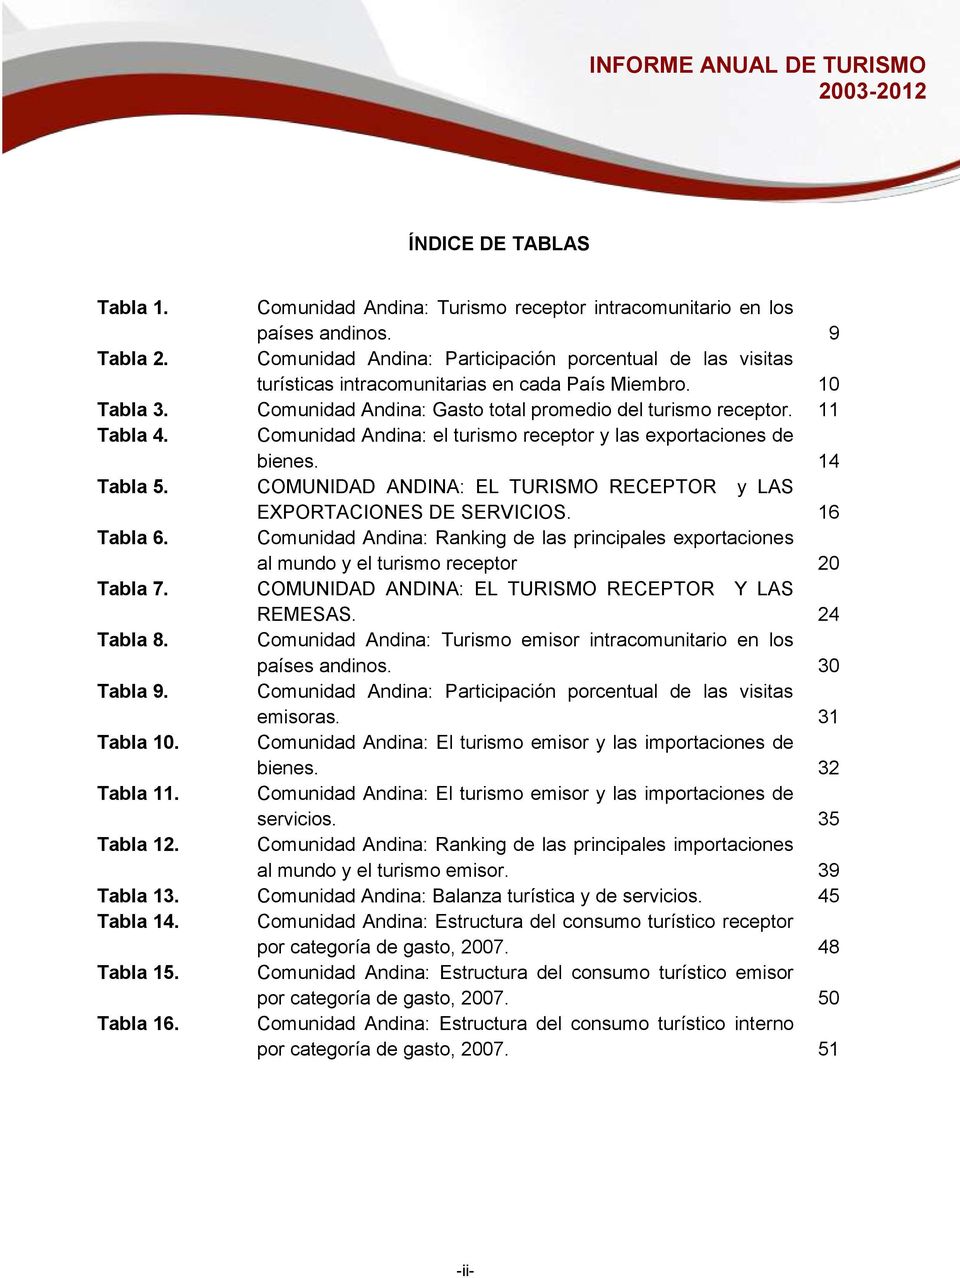 Comunidad Andina: el turismo receptor y las exportaciones de bienes. 14 Tabla 5. COMUNIDAD ANDINA: EL TURISMO RECEPTOR y LAS EXPORTACIONES DE SERVICIOS. 16 Tabla 6.